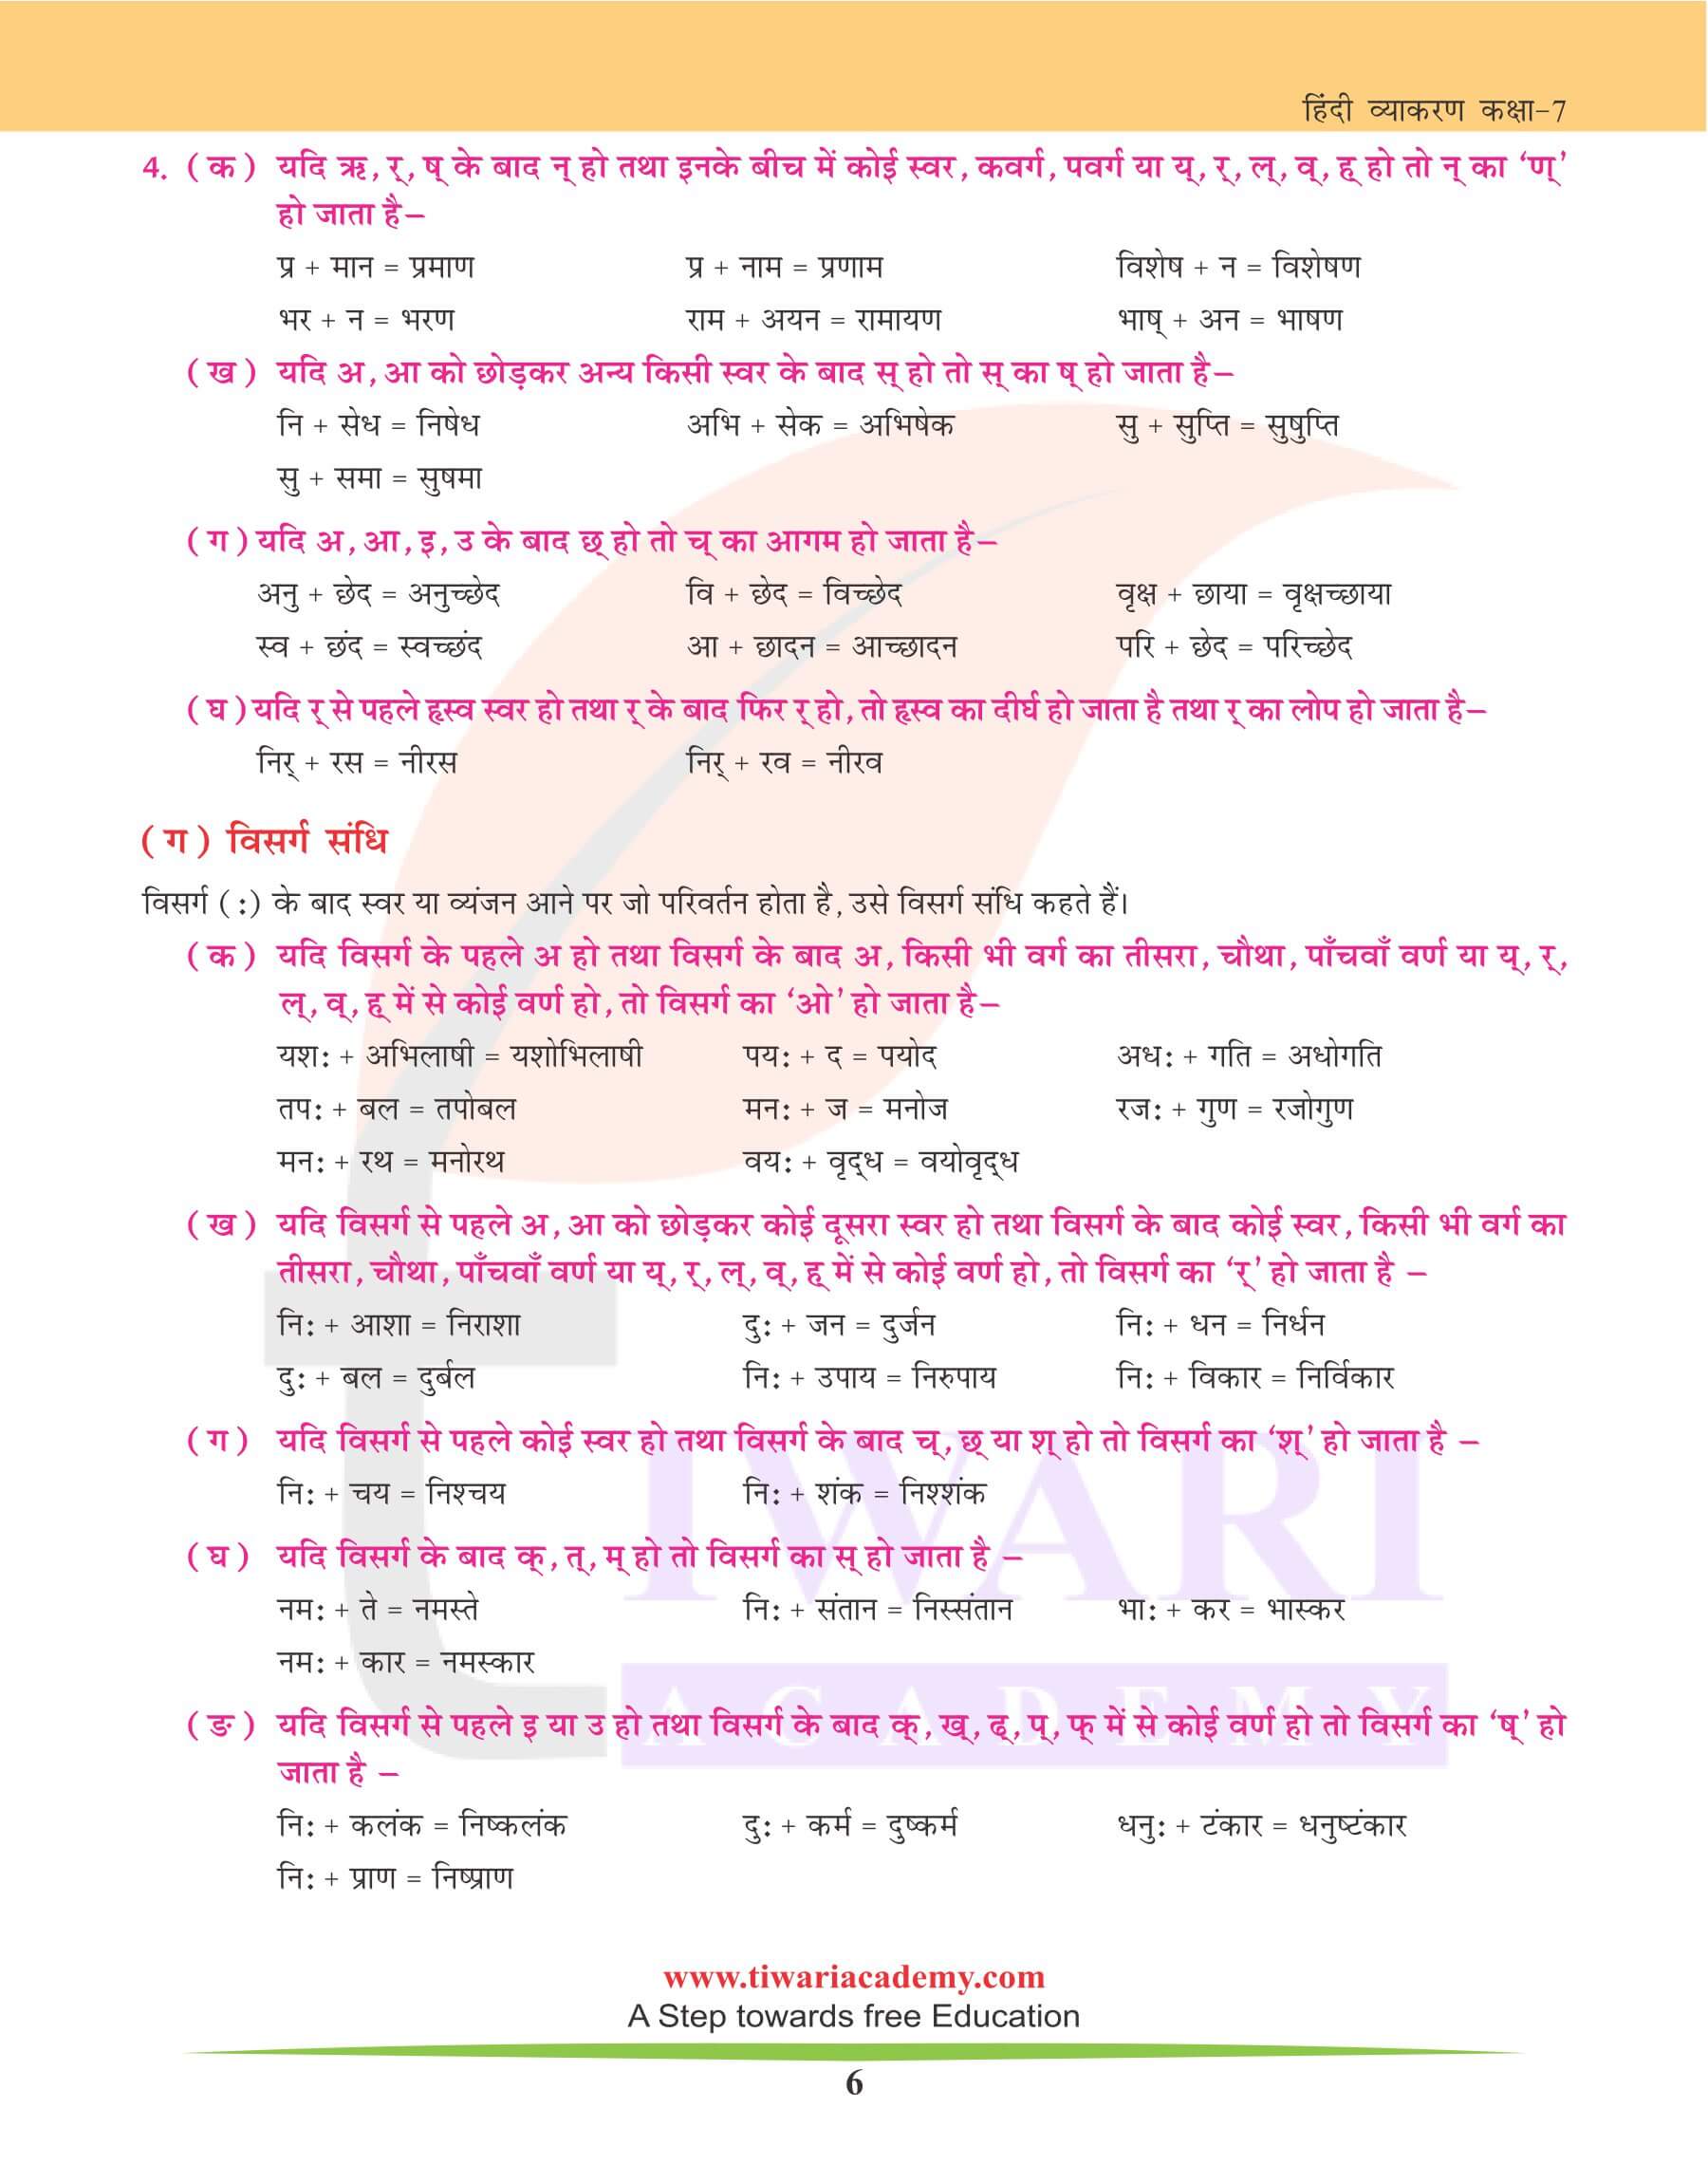 कक्षा 7 हिंदी व्याकरण में संधि-विच्छेद के उदहारण